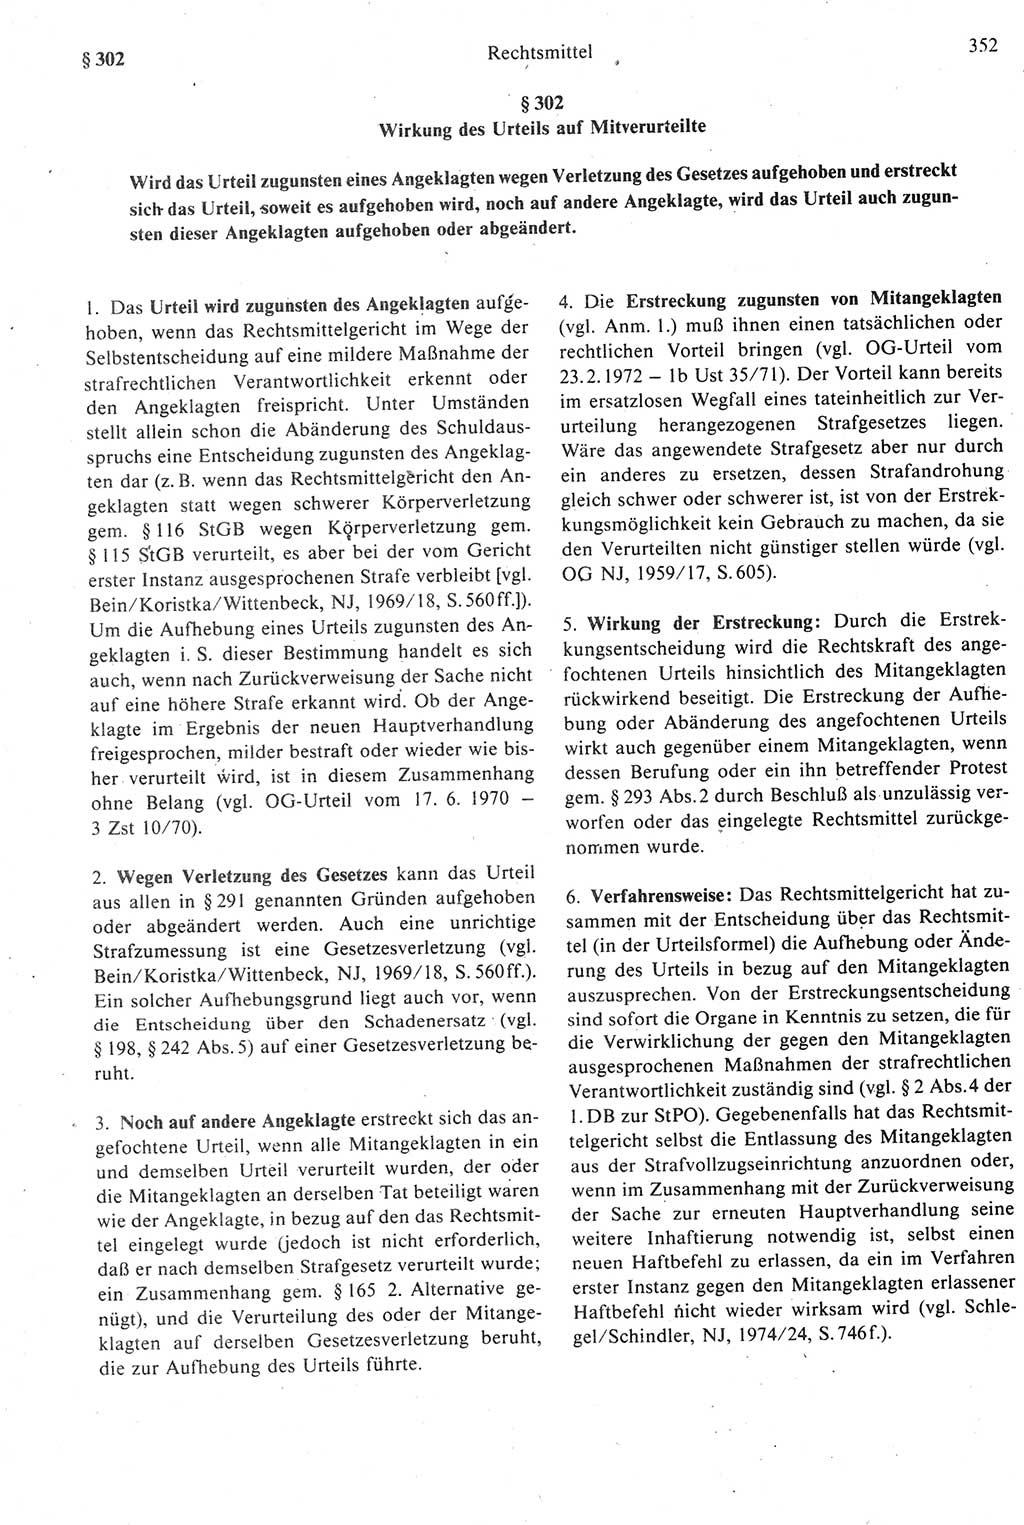 Strafprozeßrecht der DDR [Deutsche Demokratische Republik], Kommentar zur Strafprozeßordnung (StPO) 1987, Seite 352 (Strafprozeßr. DDR Komm. StPO 1987, S. 352)